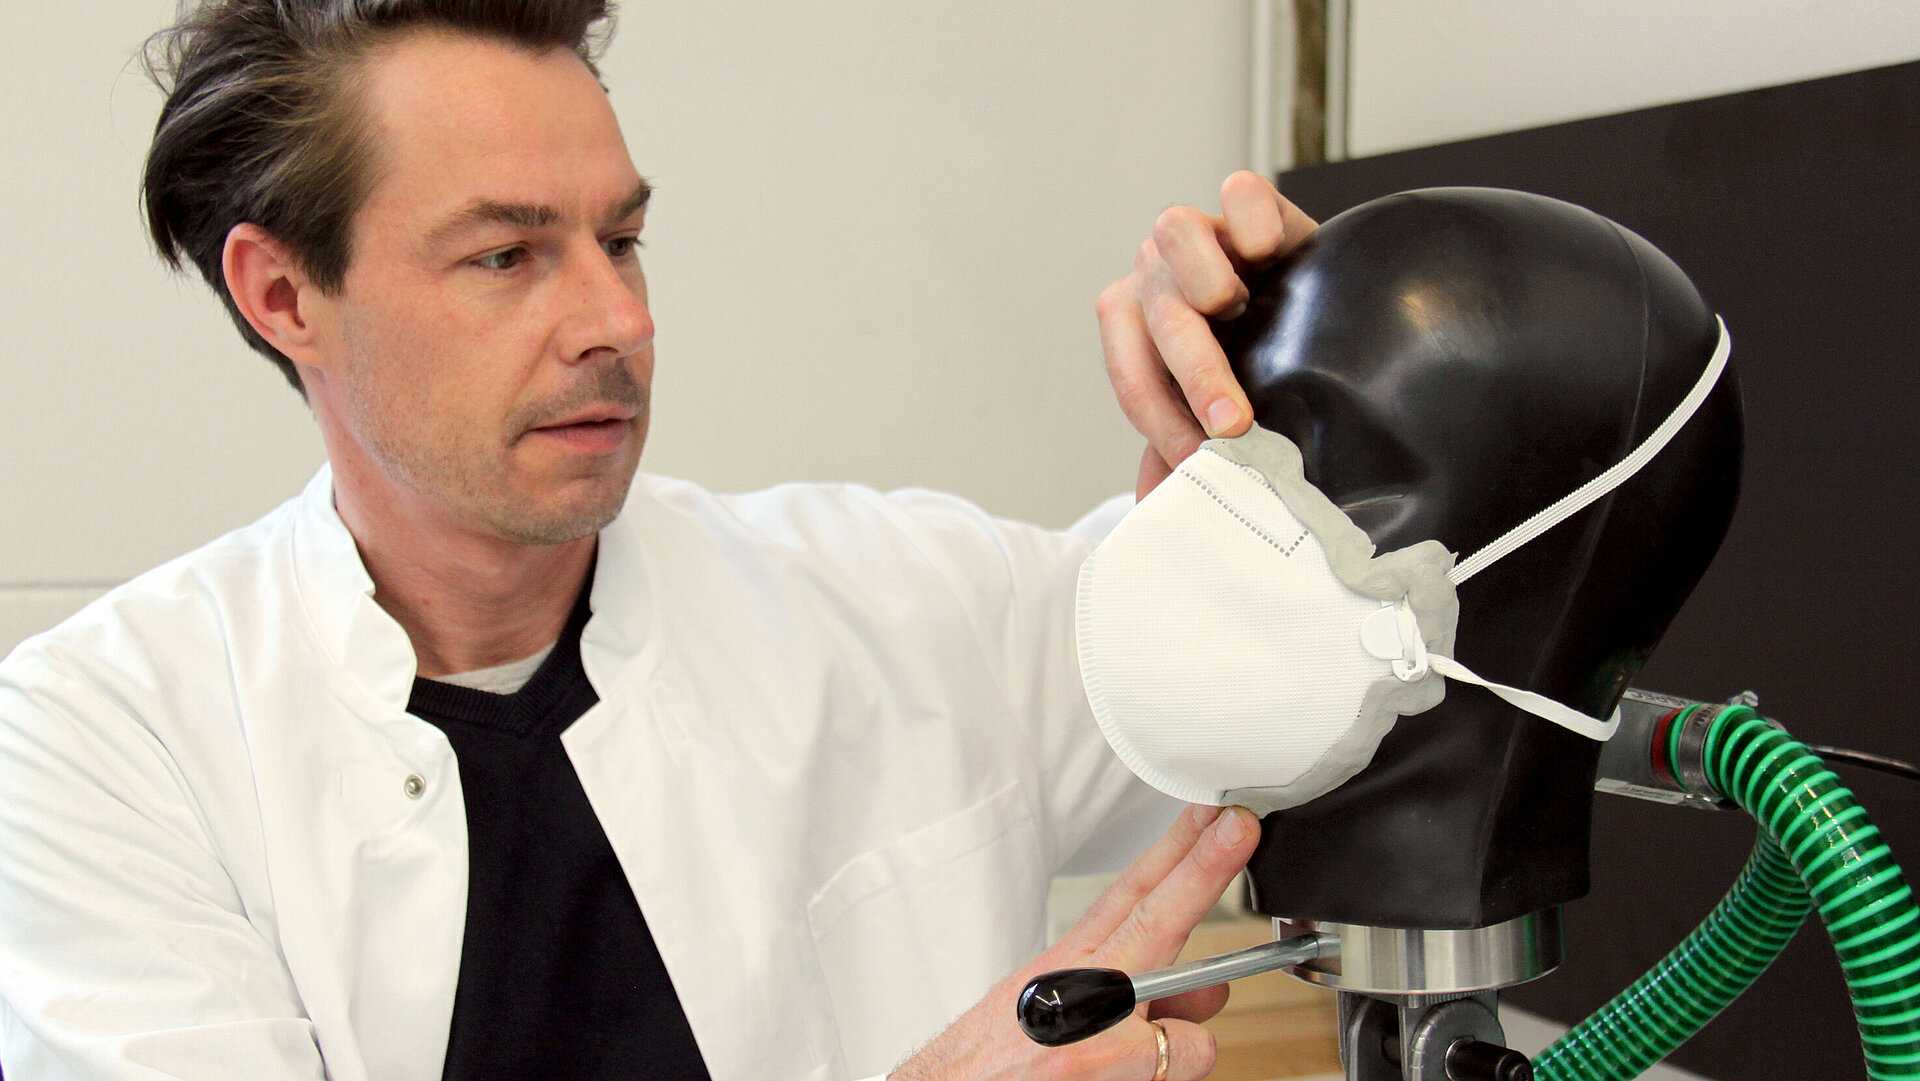 Ein Prüfer in einem Laborkittel prüft eine Atemschutzmaske an einem Prüfkopf